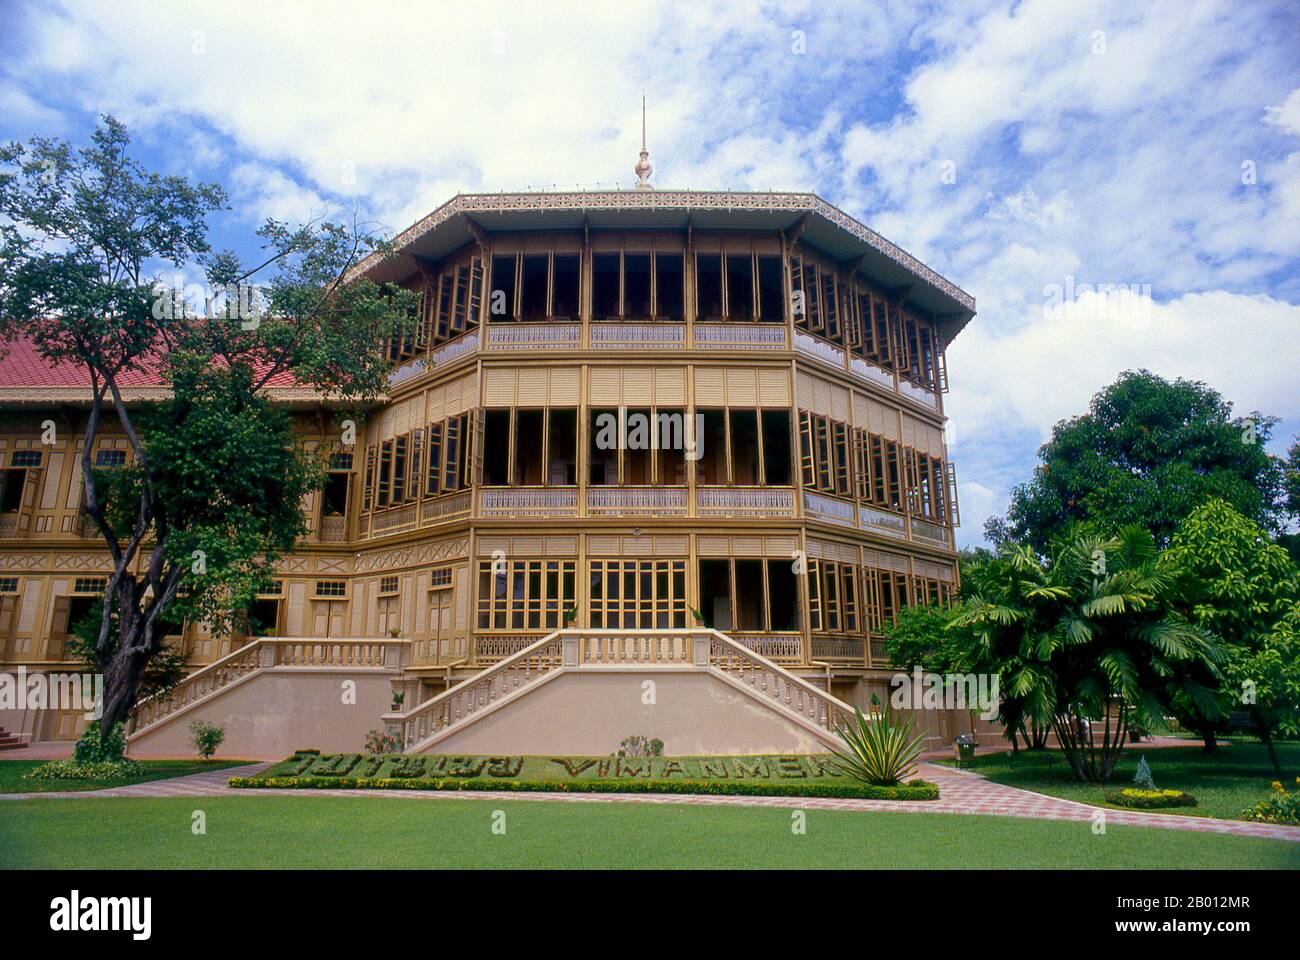 Thaïlande : Hôtel Vimanmek, Parc Dusit, Bangkok. Le manoir de Vimanmek est un ancien palais royal, également connu sous le nom de manoir de Vimanmek ou Palais de Vimanmek. La résidence Vimanmek a été construite en 1900 par le roi Rama V (le roi Chulalongkorn) en faisant démonter et remonter la résidence Munthatu Rattanaroj à Chuthathuj Rachathan à Ko Sichang, Chonburi, dans le jardin Dusit. Il a été achevé le 27 mars 1901 et utilisé comme palais royal par le roi Rama V pendant cinq ans. En 1982, la reine Sirikit demande la permission du roi Rama IX (Bhumibol Adulyadej) de rénover le Palais Vimanmek pour l'utiliser comme musée. Banque D'Images